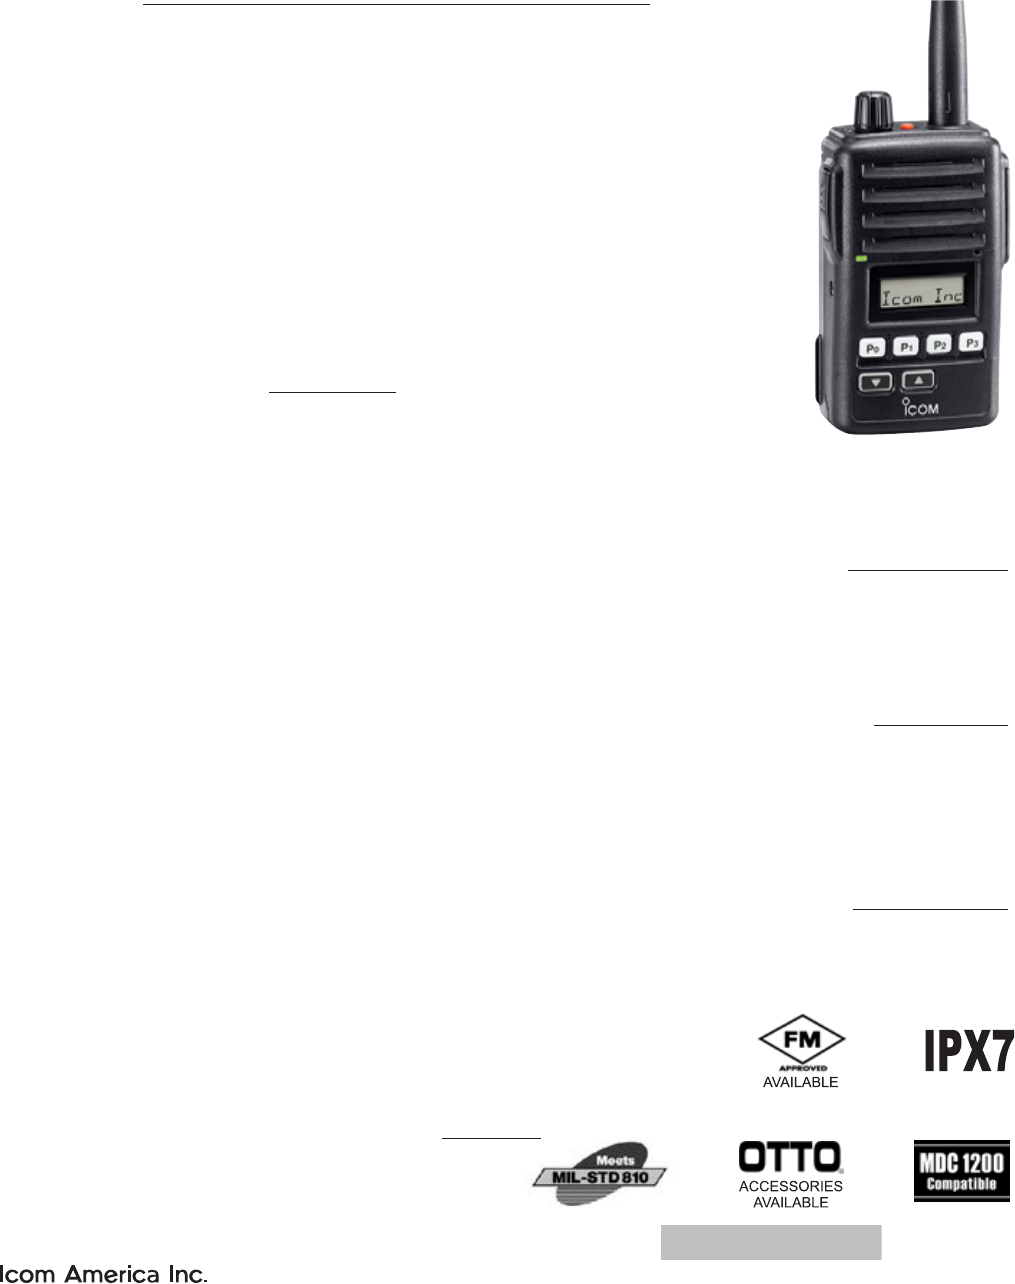 NEW ICOM VOICE SCRAMBLER UT-110R 21 F5011 F6021 F3021 F4021 F14 F24 F3161 FR5000 